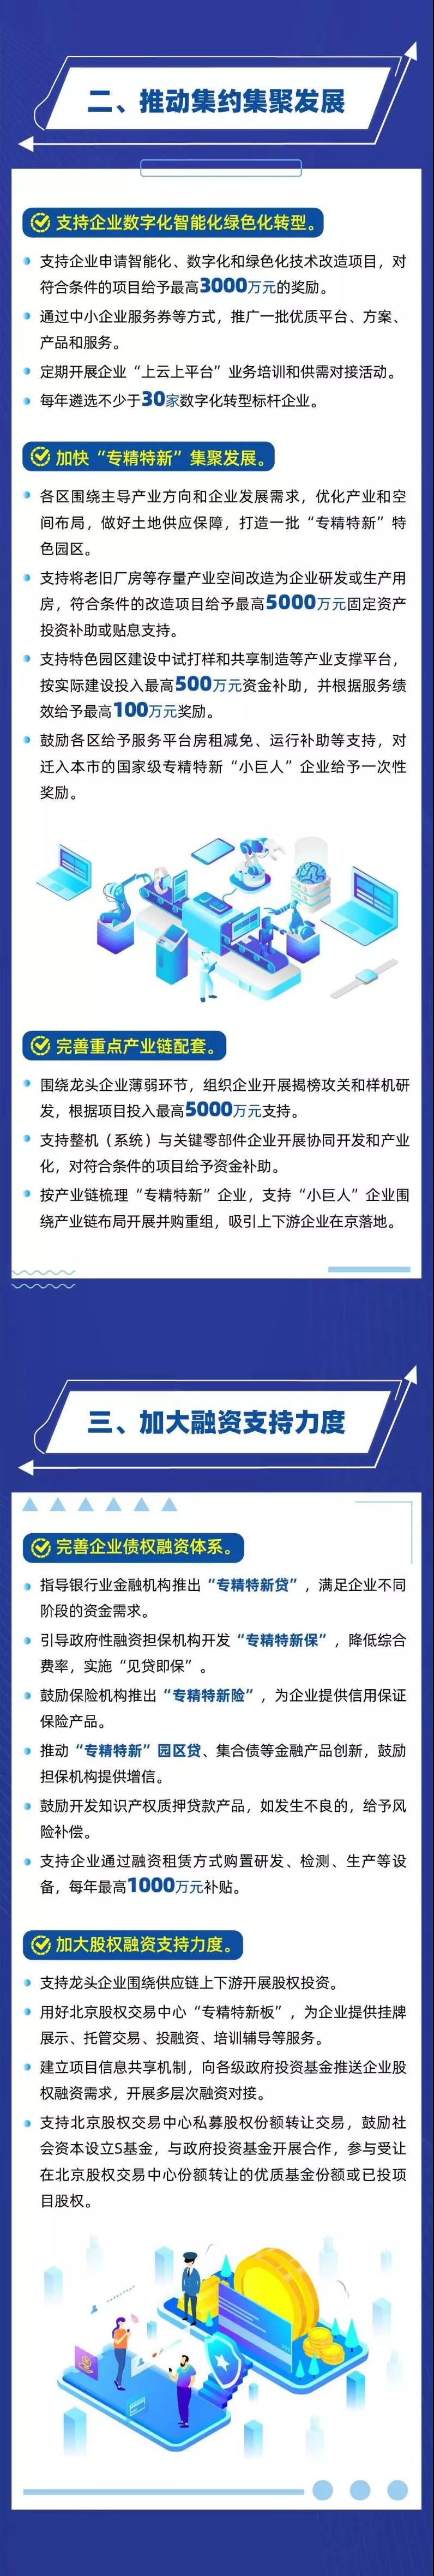 北京市关于促进“专精特新”中小企业高质量发展的若干措施政策图解